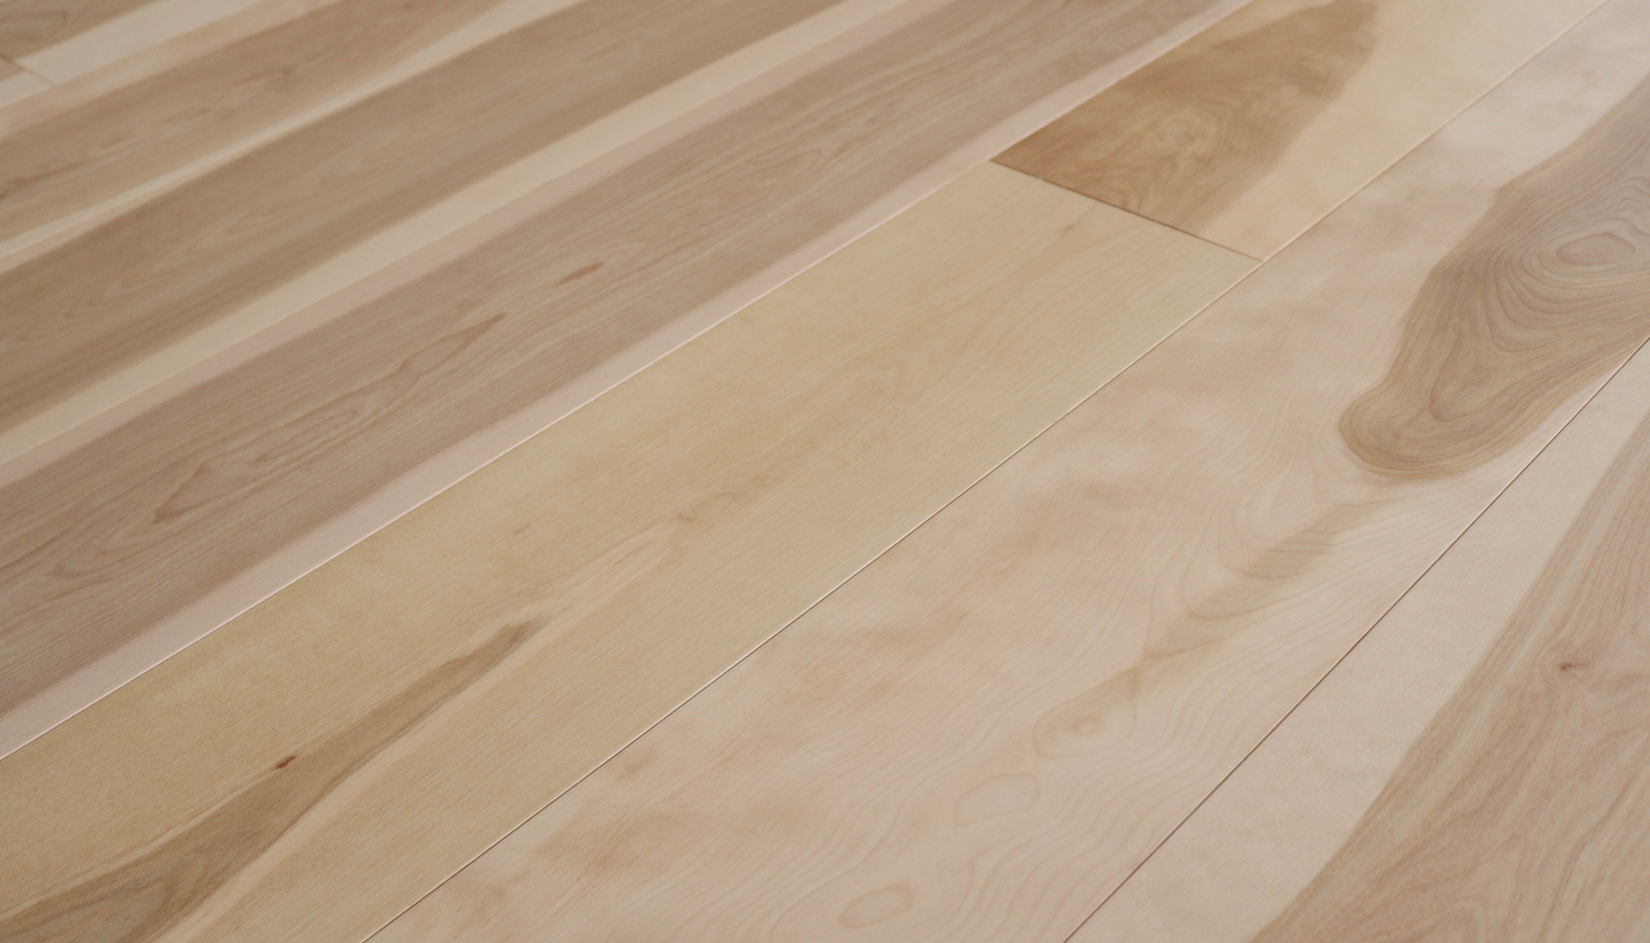 Flat White Maple Lv Hardwood, Fixed Length Hardwood Flooring